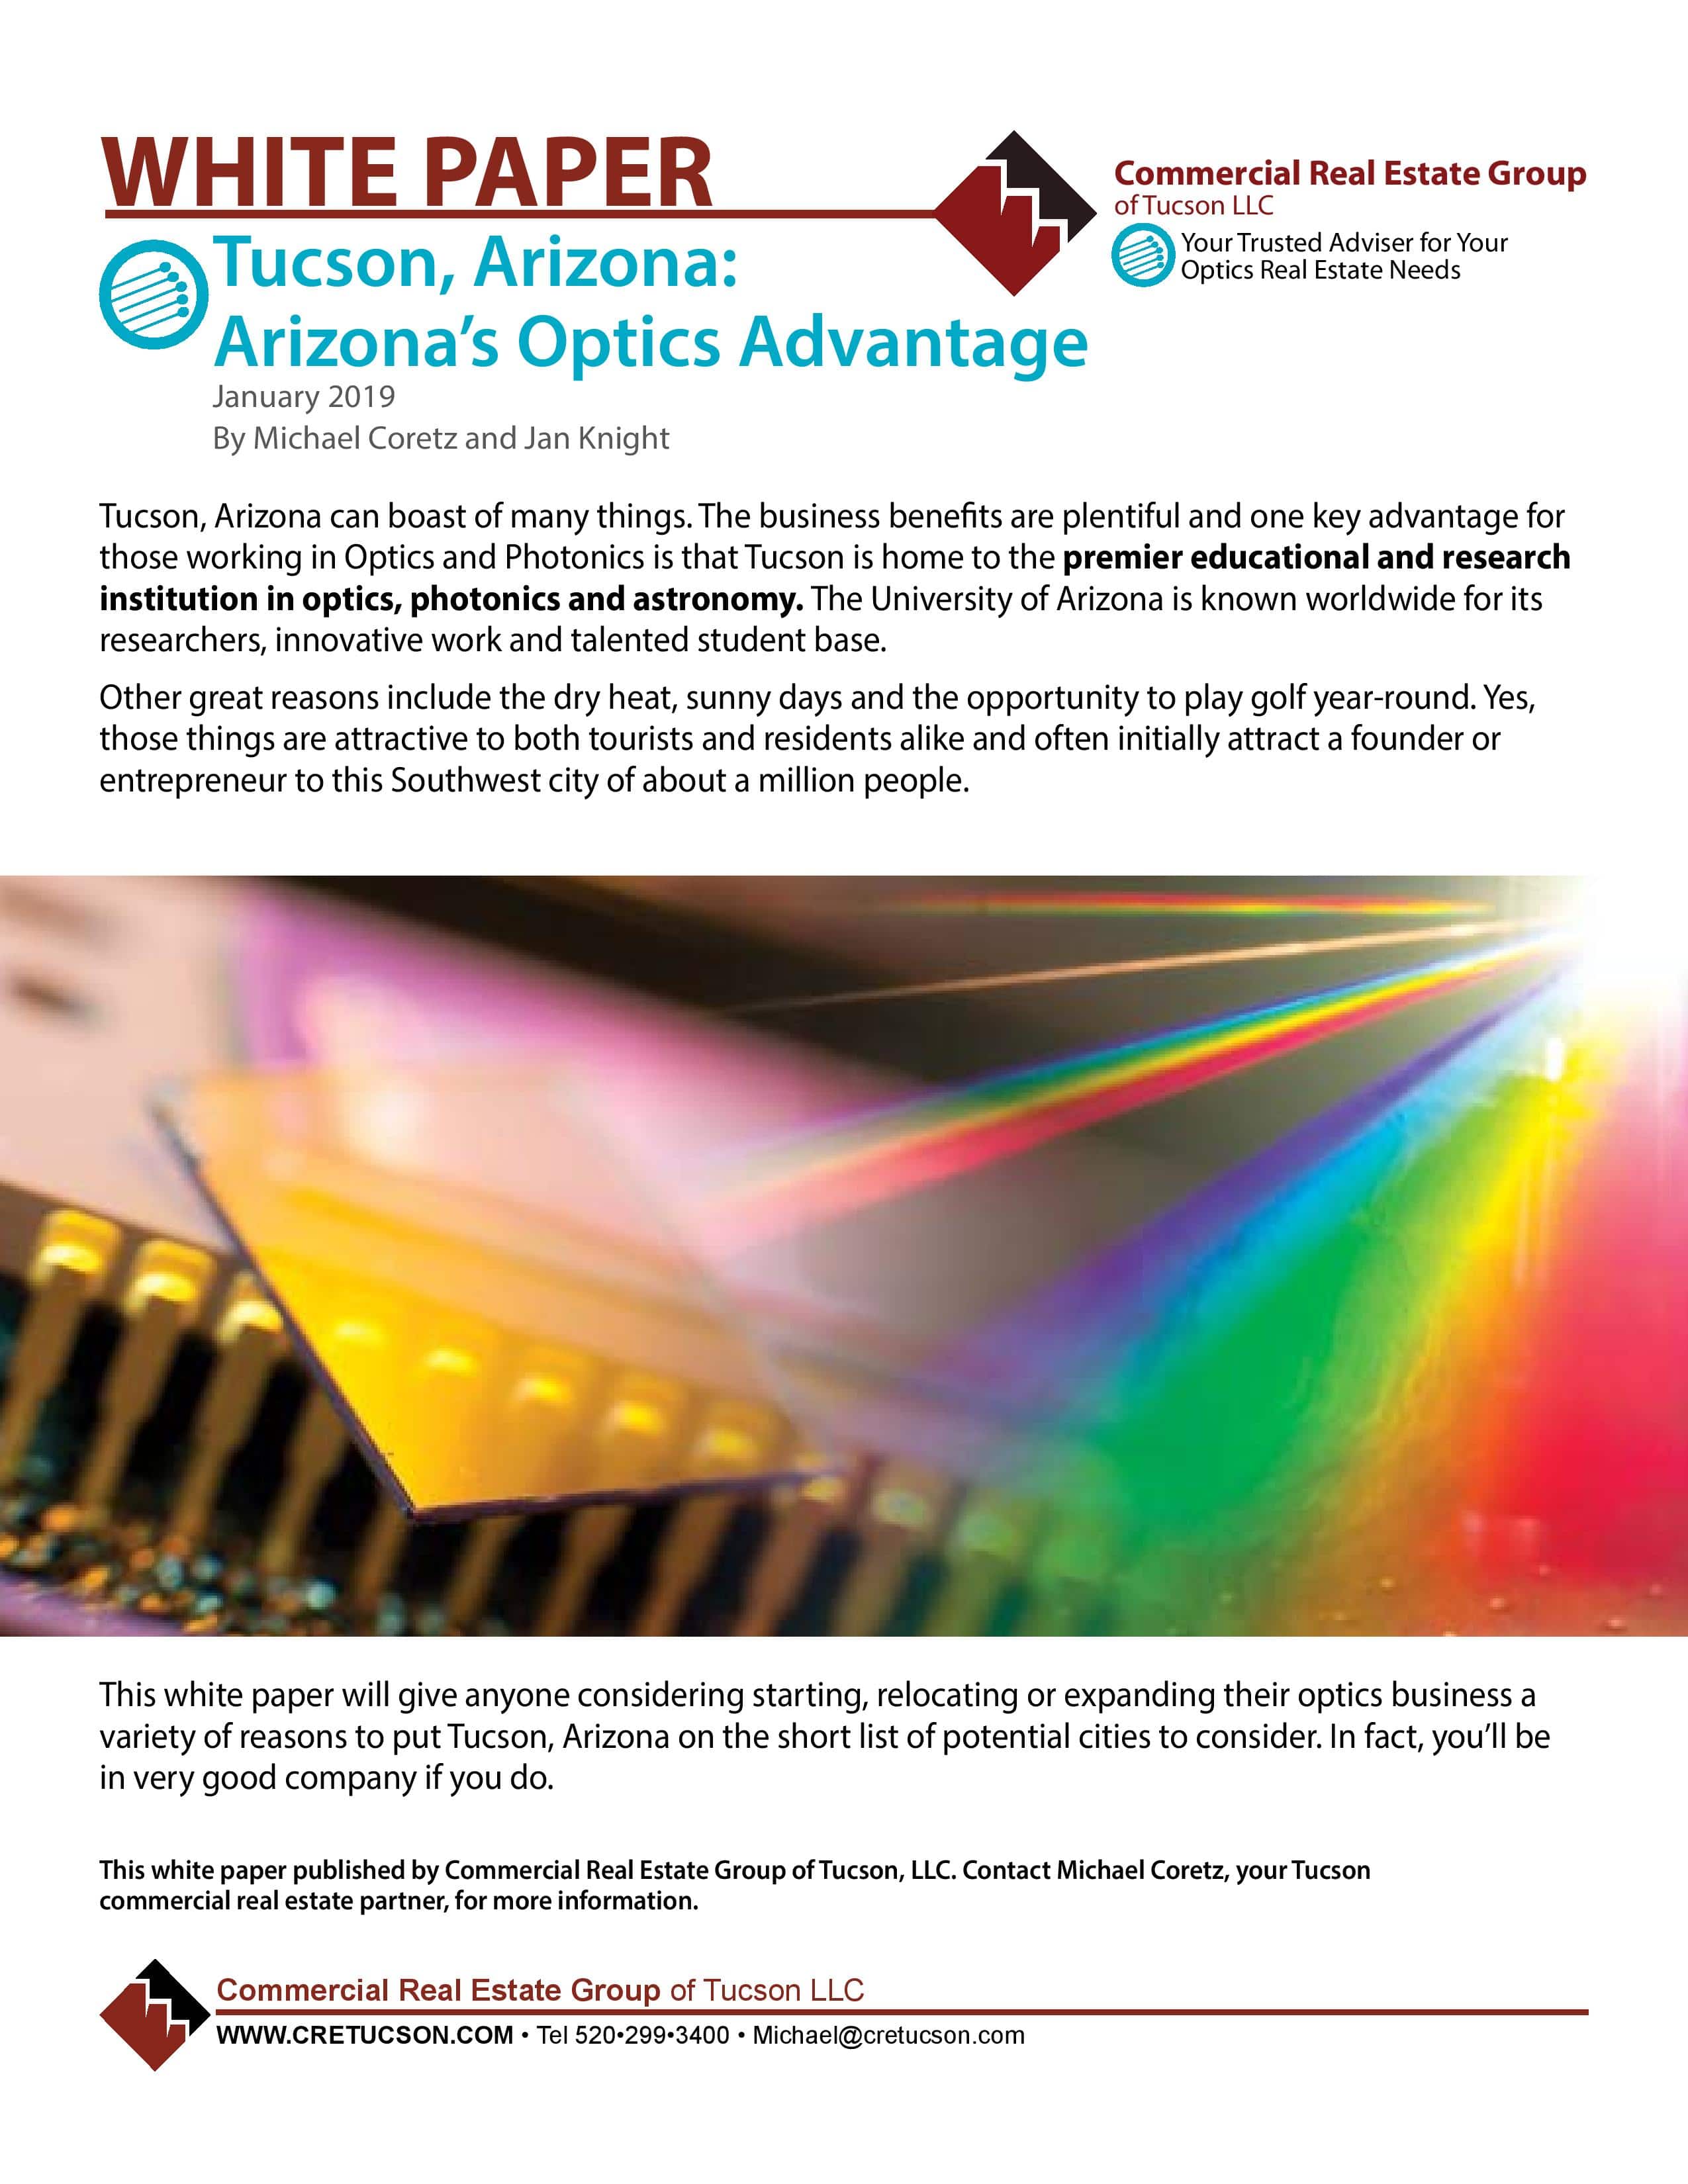 Tucson, Arizona: Arizona's Optics Advantage